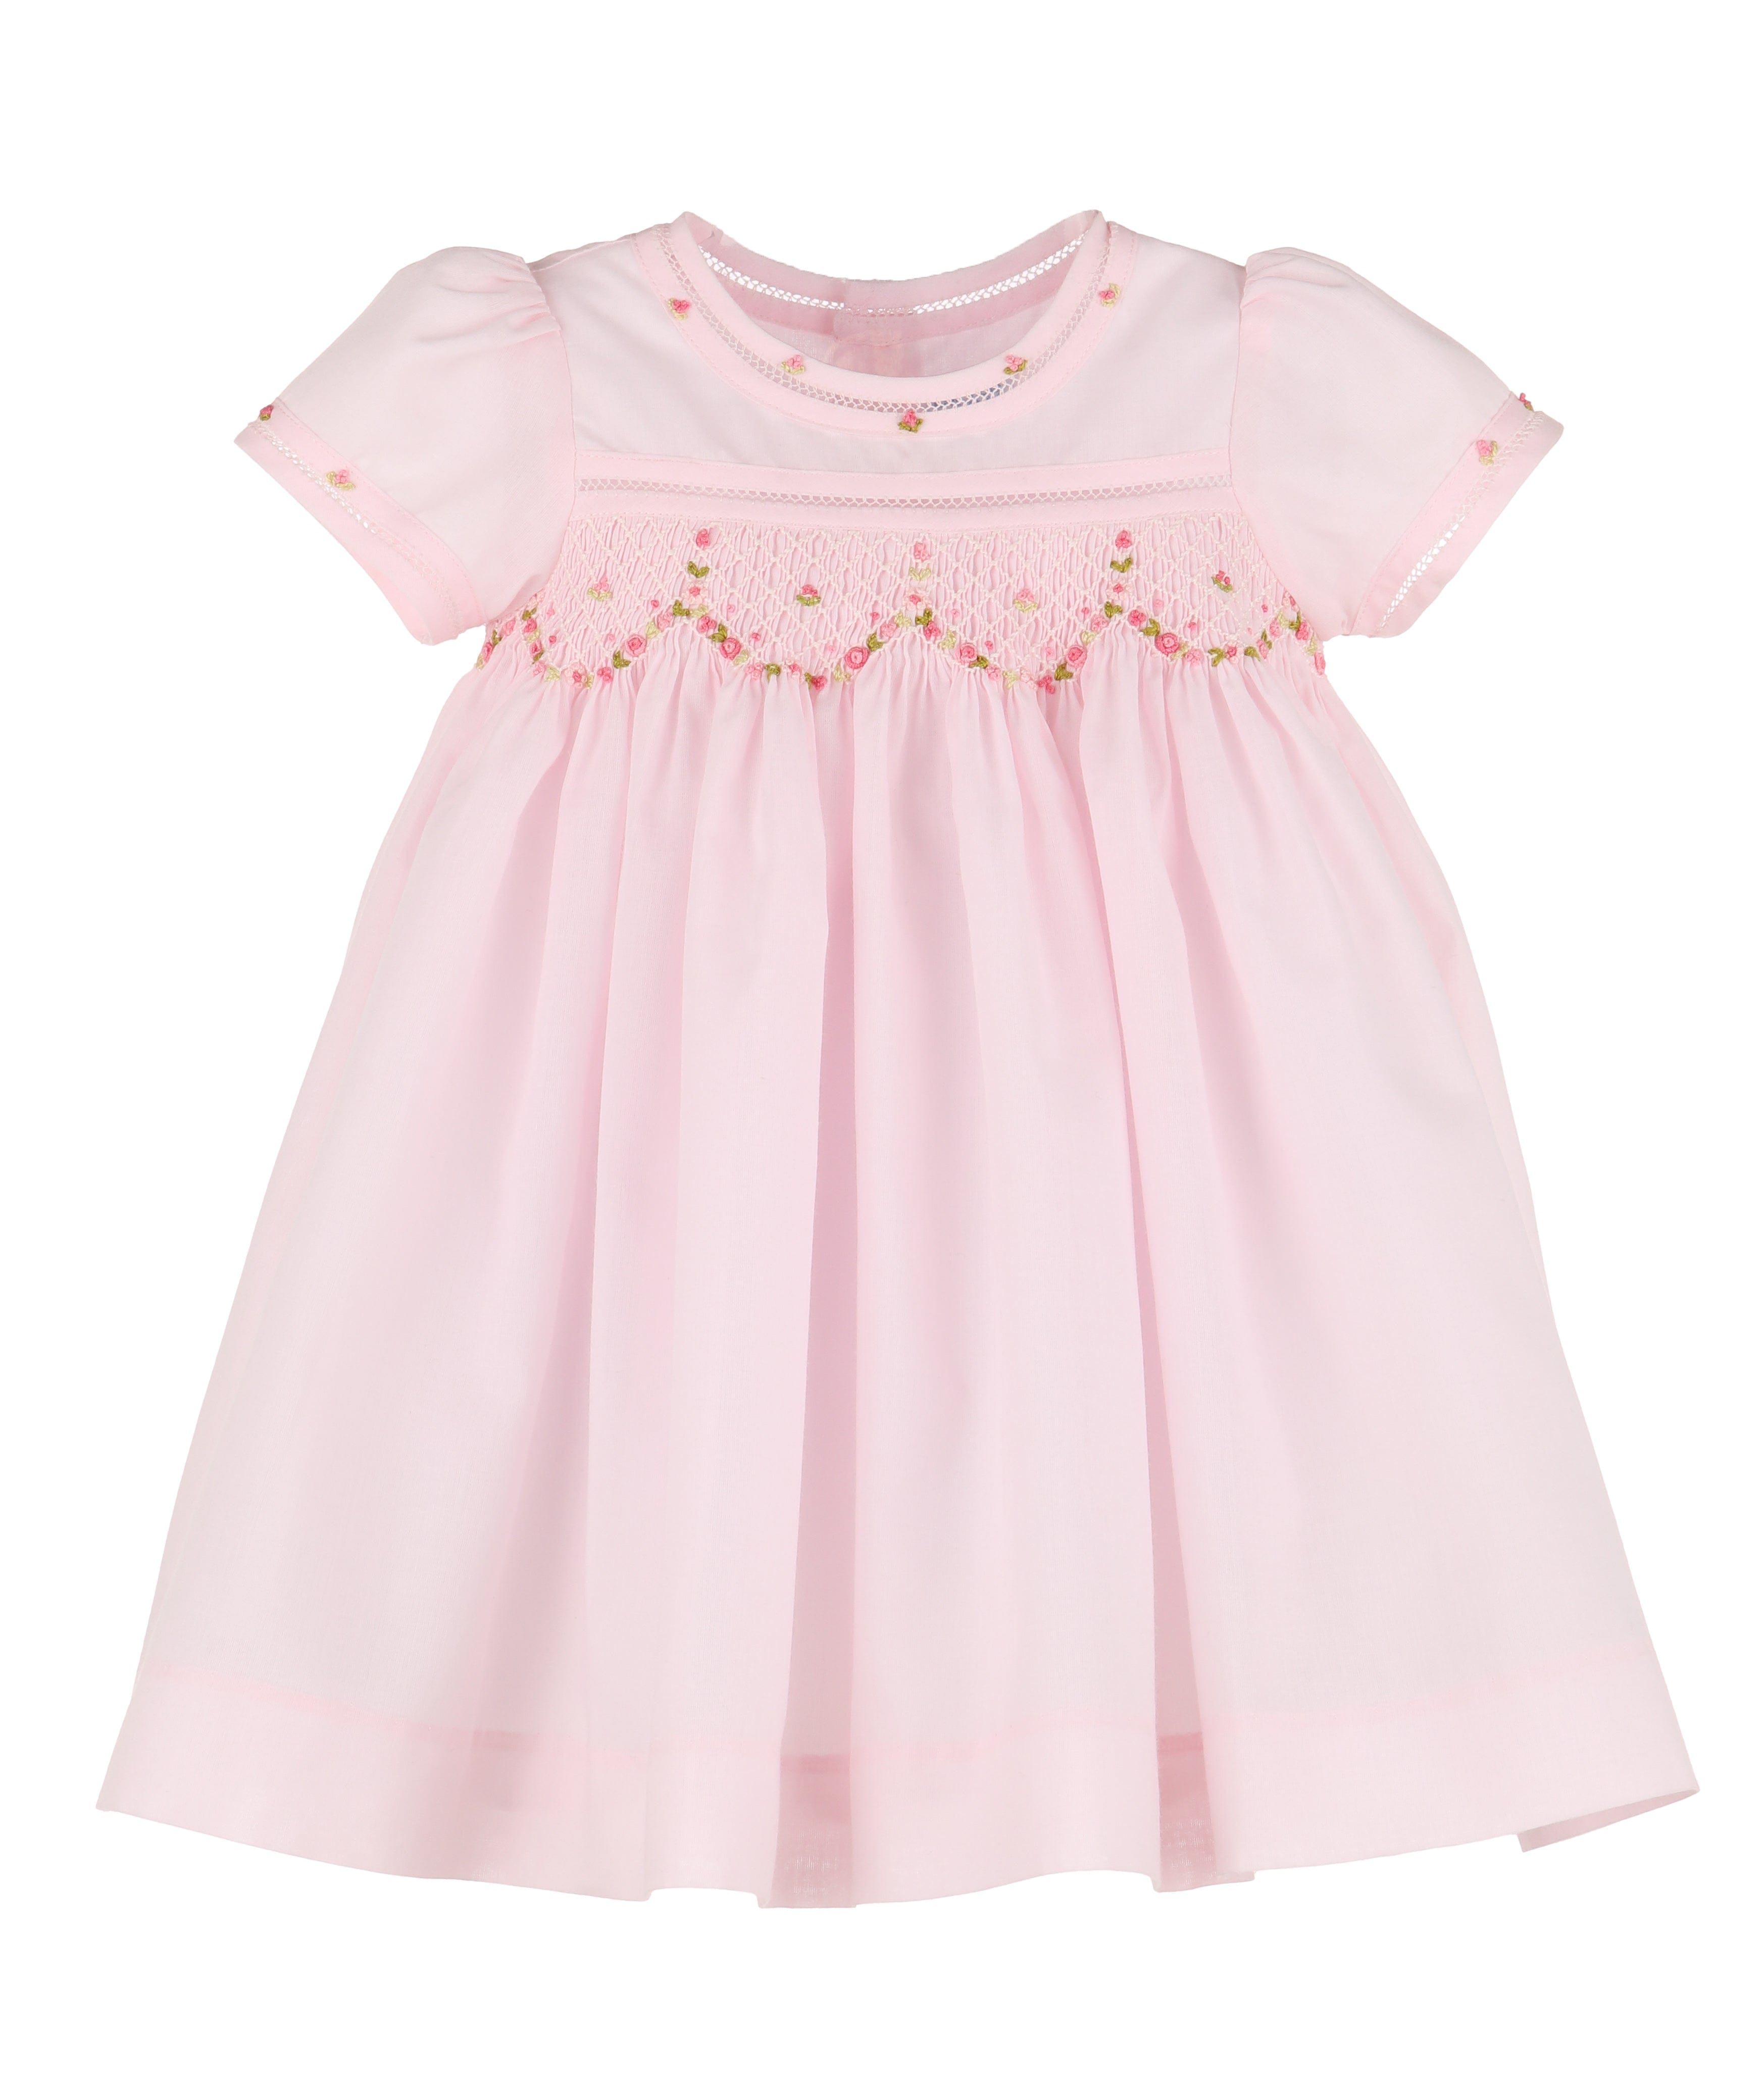 Casero & Associates Casero & Associates Petal & Randall Smock Dress - Little Miss Muffin Children & Home